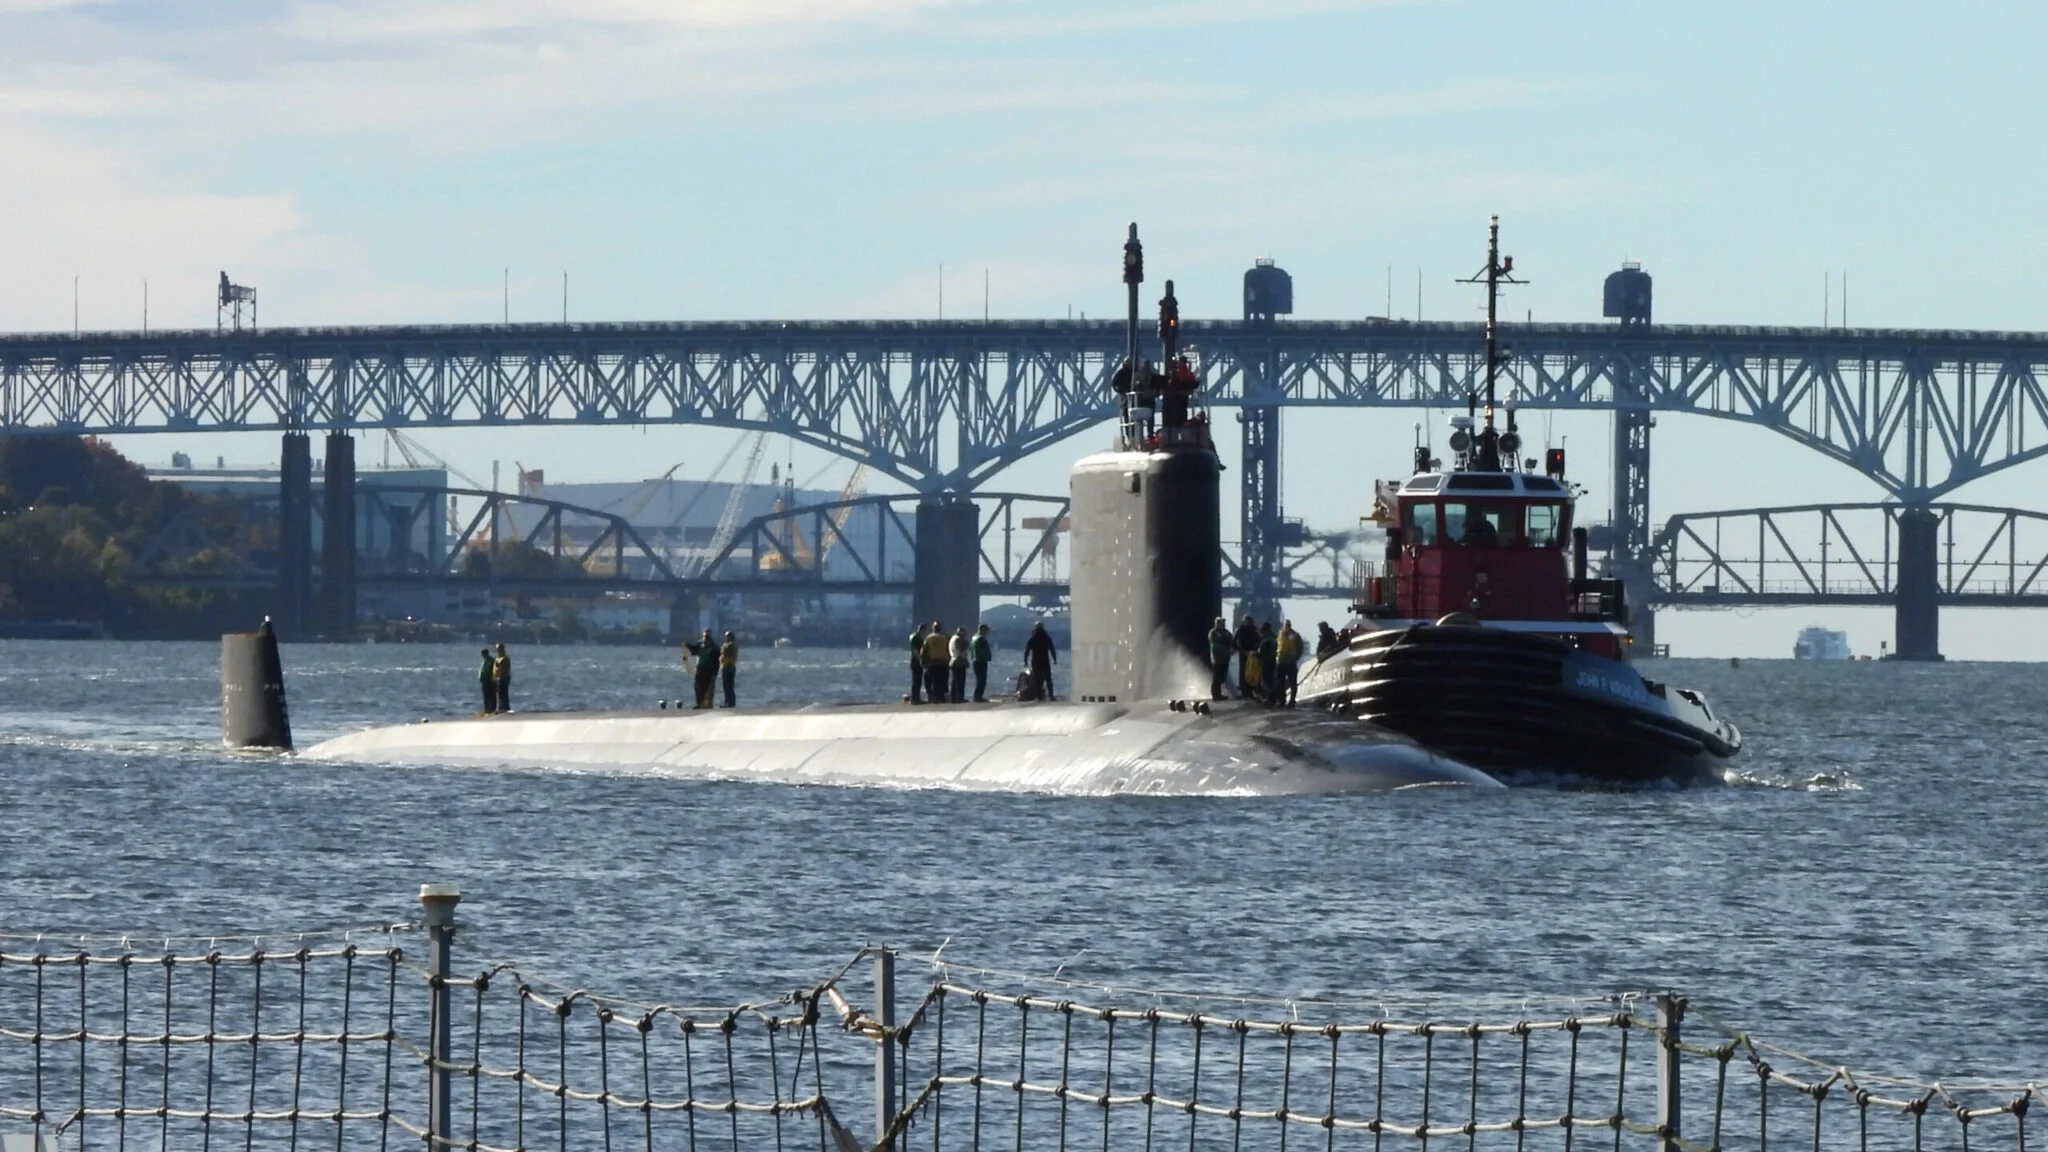 Den amerikanska marinen har avslöjat när man kommer att sälja atomdrivna ubåtar av Virginia-klass till Australien som en del av AUKUS-alliansen